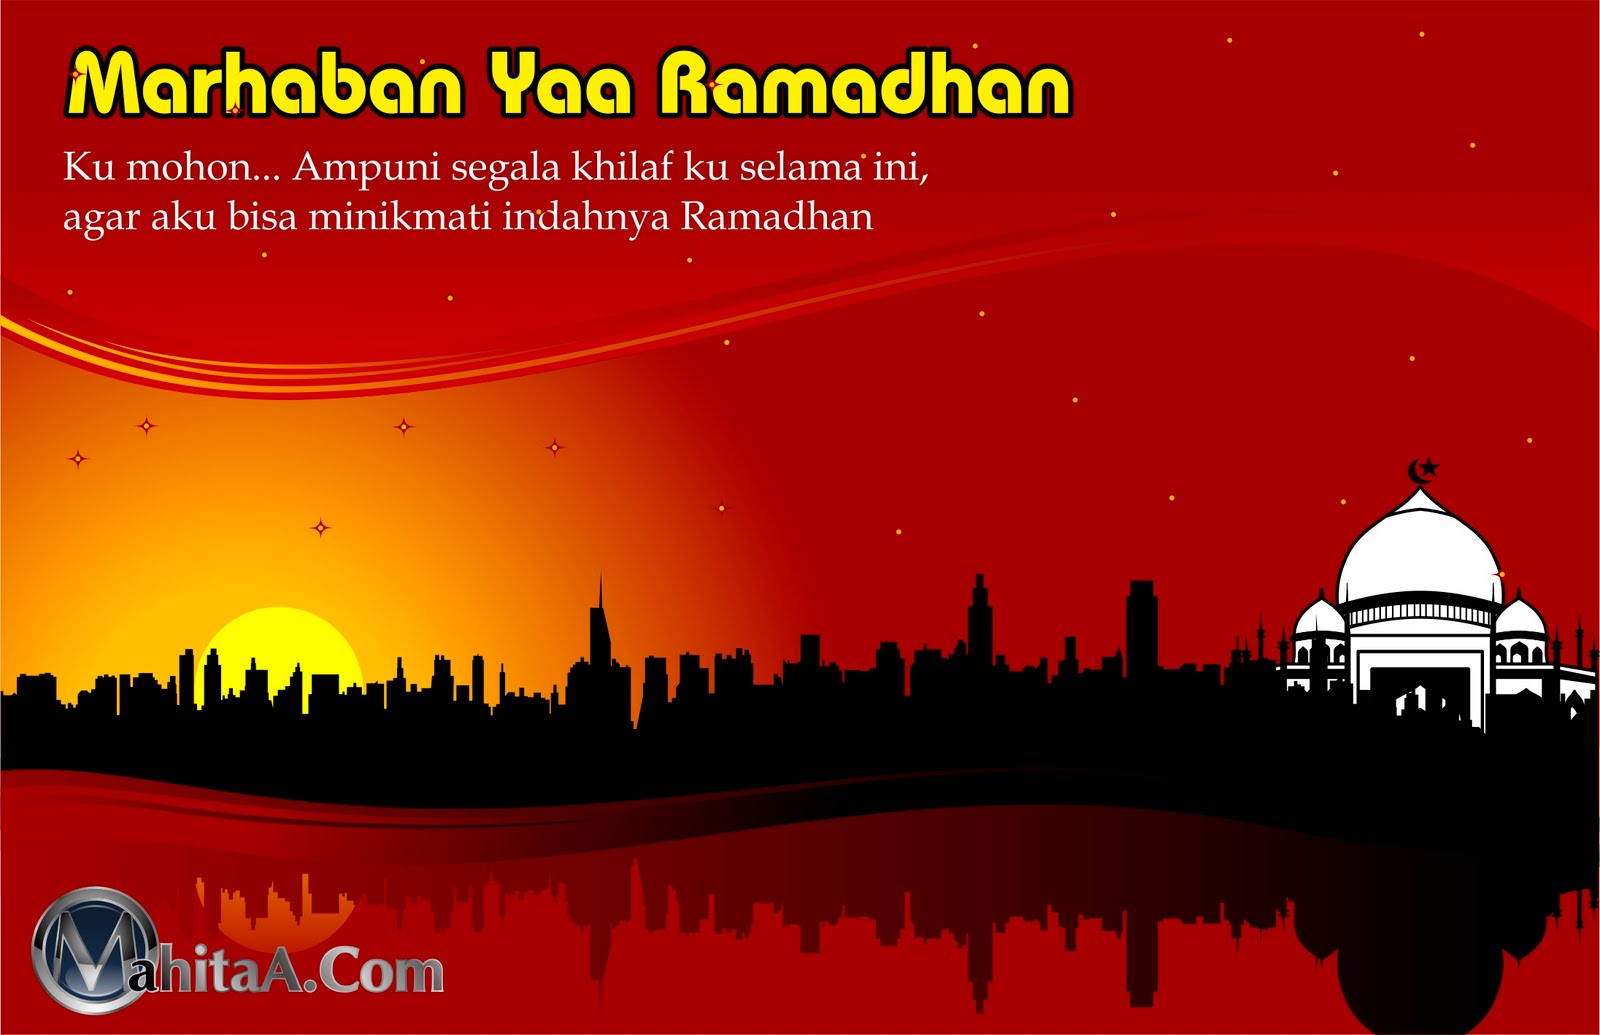 [me] masekocetak: Marhaban Yaa Ramadhan